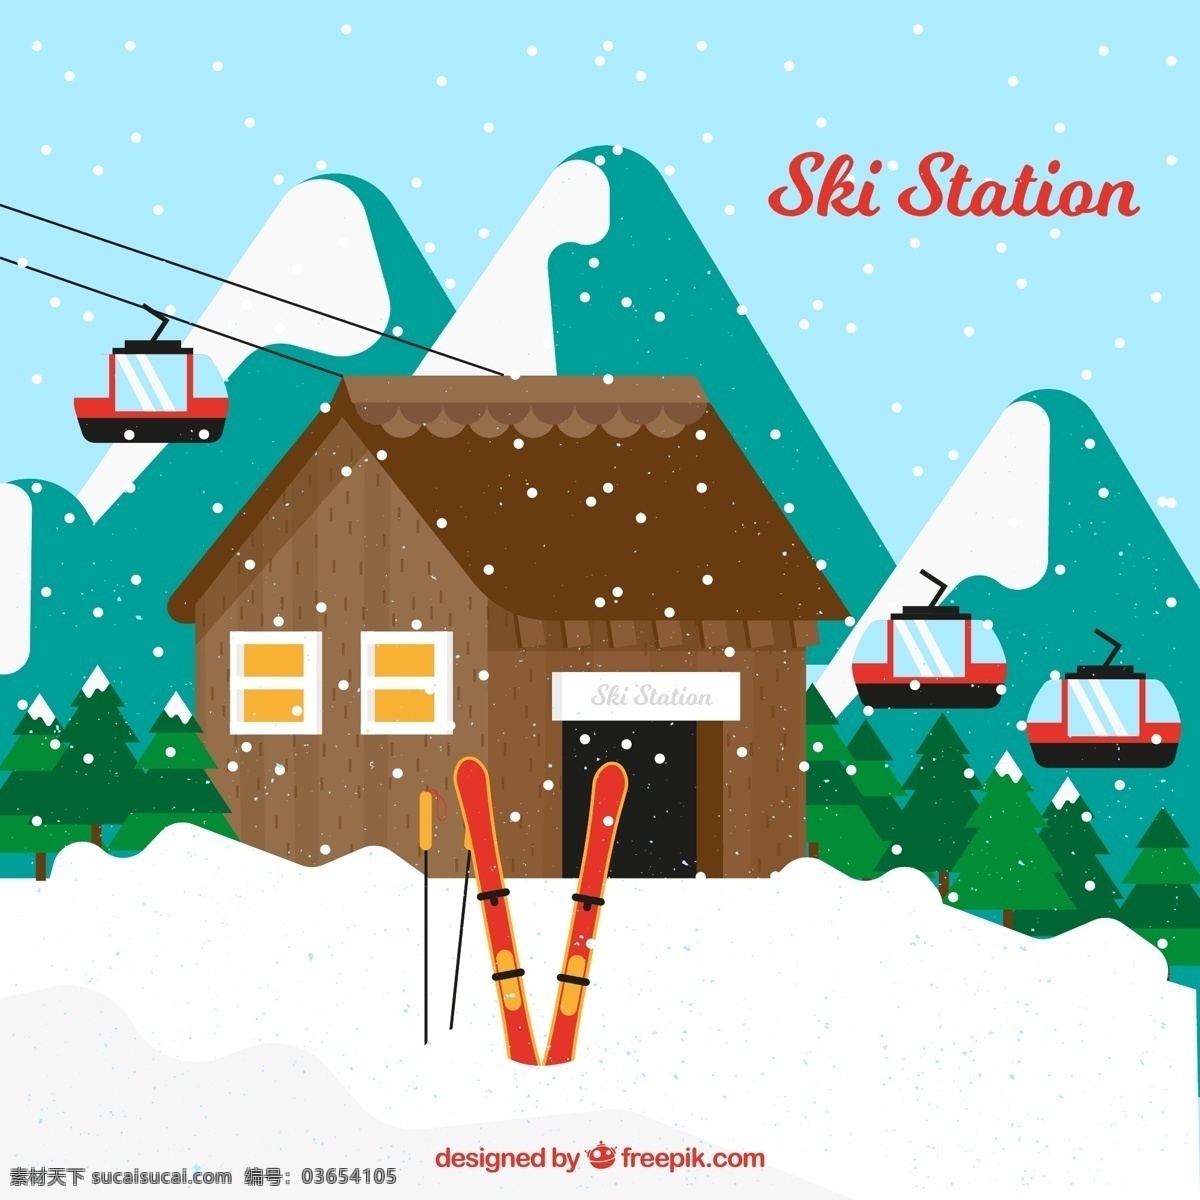 创意 雪 中 滑雪场 雪中 滑雪板 雪花 房屋 山 雪山 树林 松树 风景 自然景观 自然风光